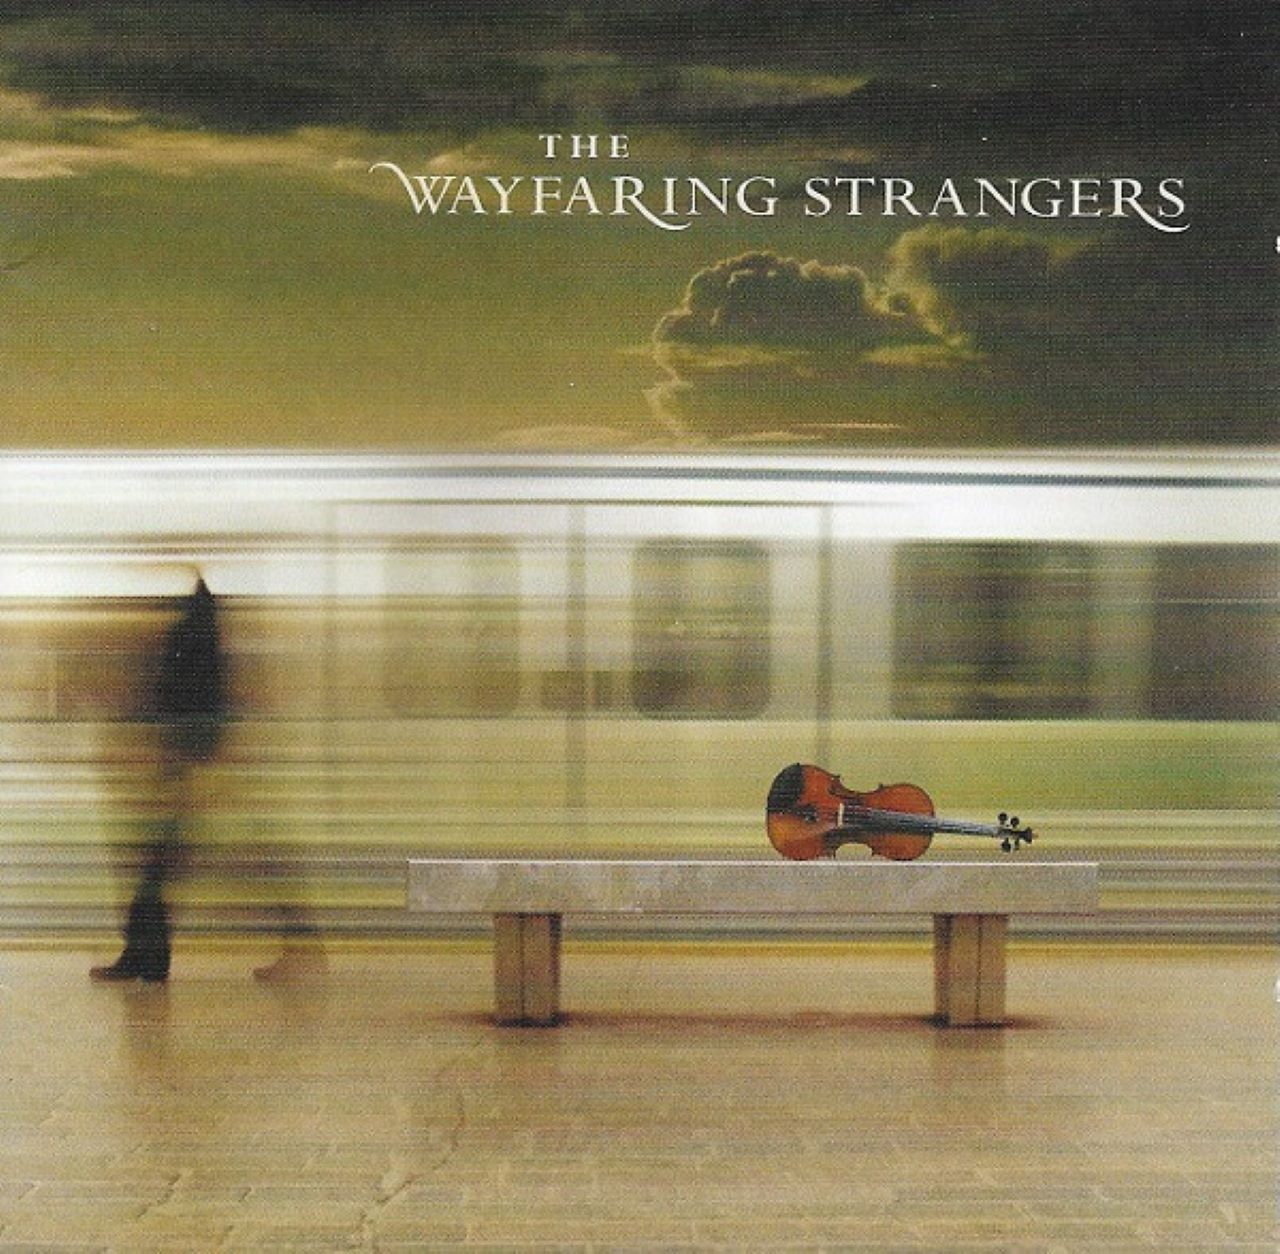 Wayfaring Strangers – The Wayfaring Strangers cover album